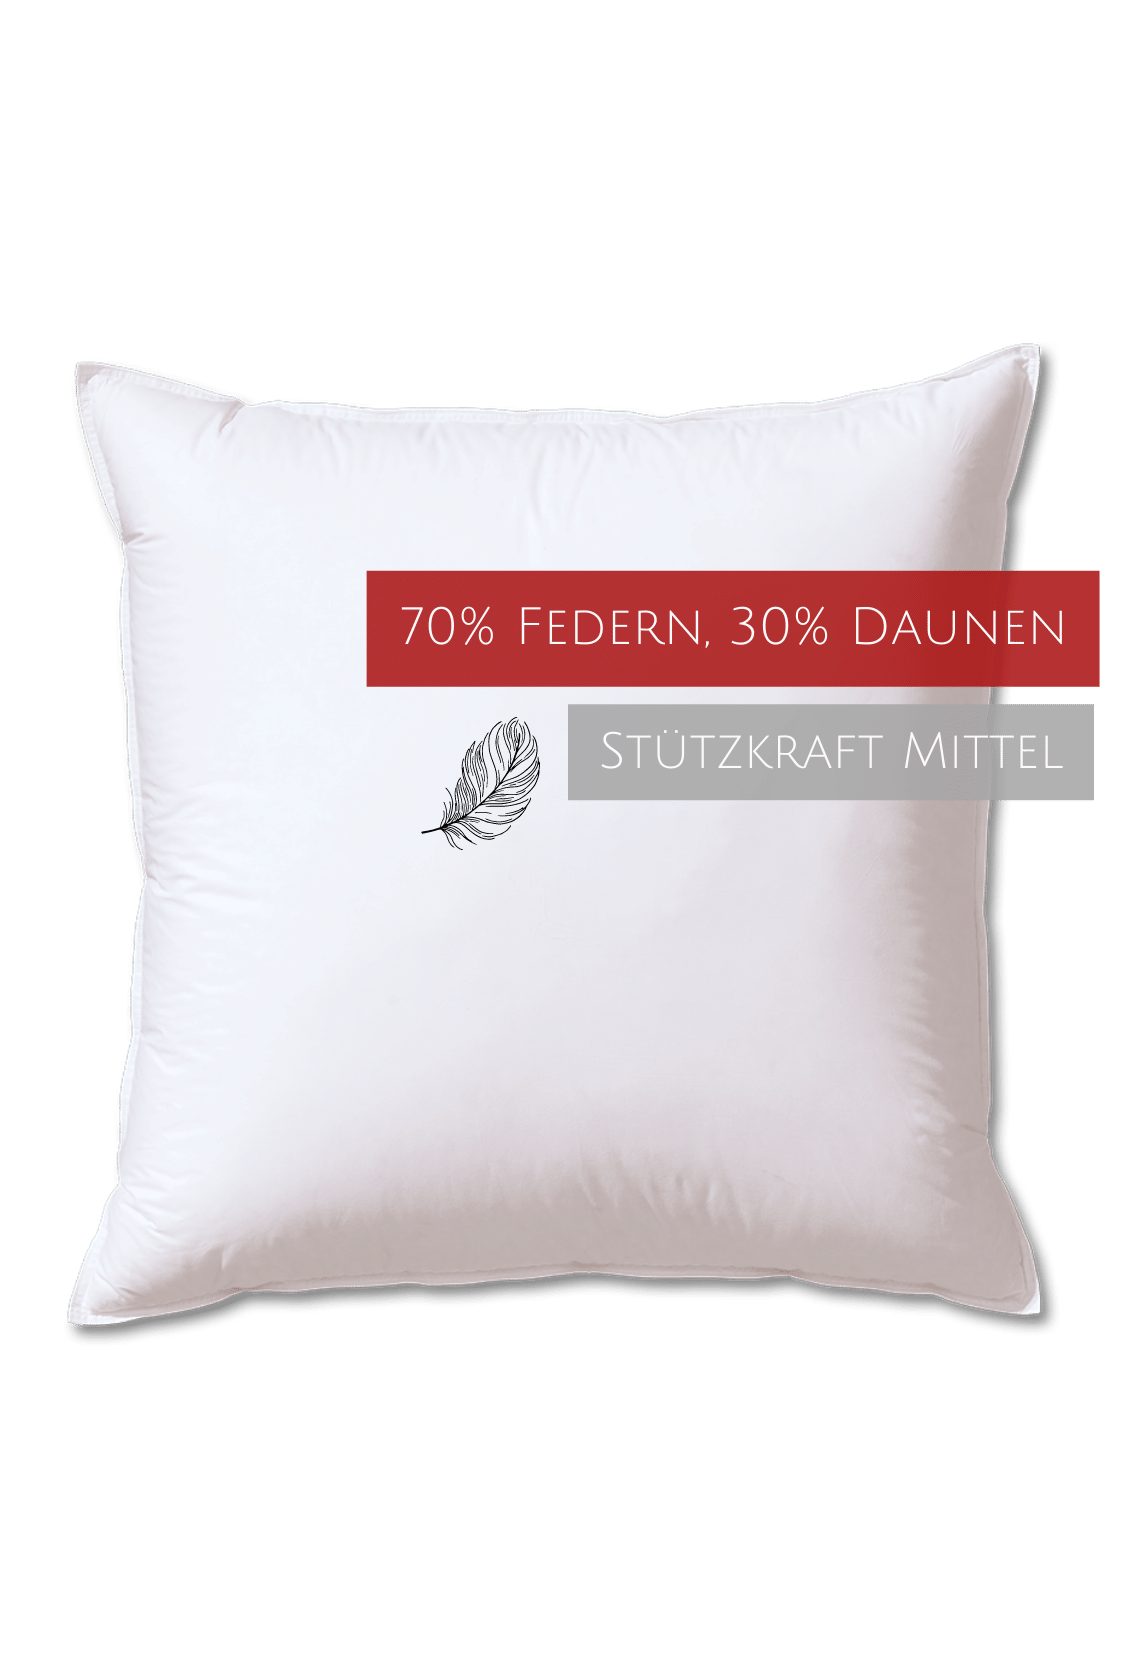 Kopfkissen Edition, Kauffmann, Füllung: 70% Federn, 30% Daunen, Bezug: 100% Baumwolle, allergikerfreundlich